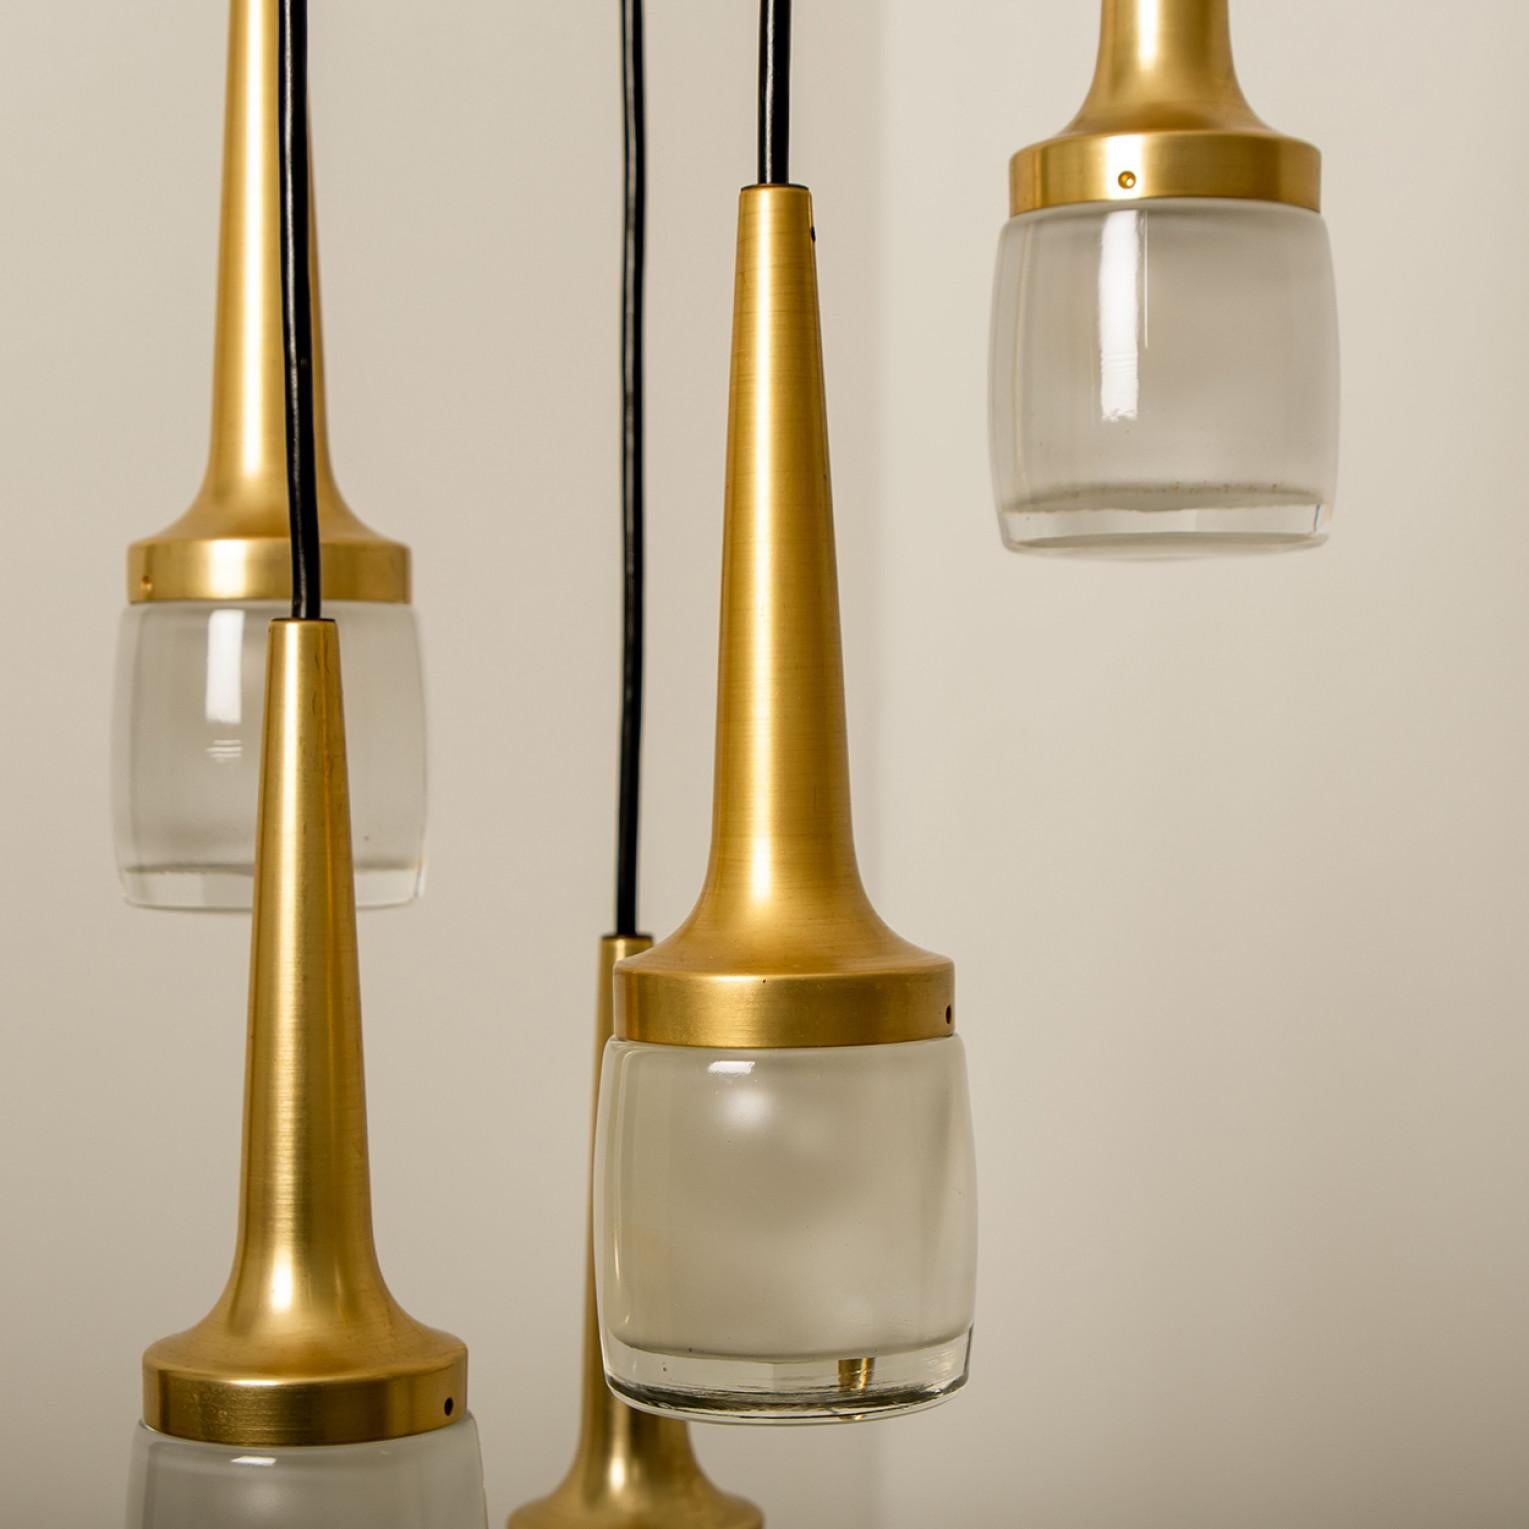 1 der 2 eleganten Kaskaden mit 6 Leuchten wurde von Staff Leuchten in Deutschland hergestellt. Die Leuchte besteht aus vermessingtem Aluminium und dickem, cremefarbenem Opalglas, das auf der Innenseite geätzt ist. Spielerisch zu arrangieren, indem